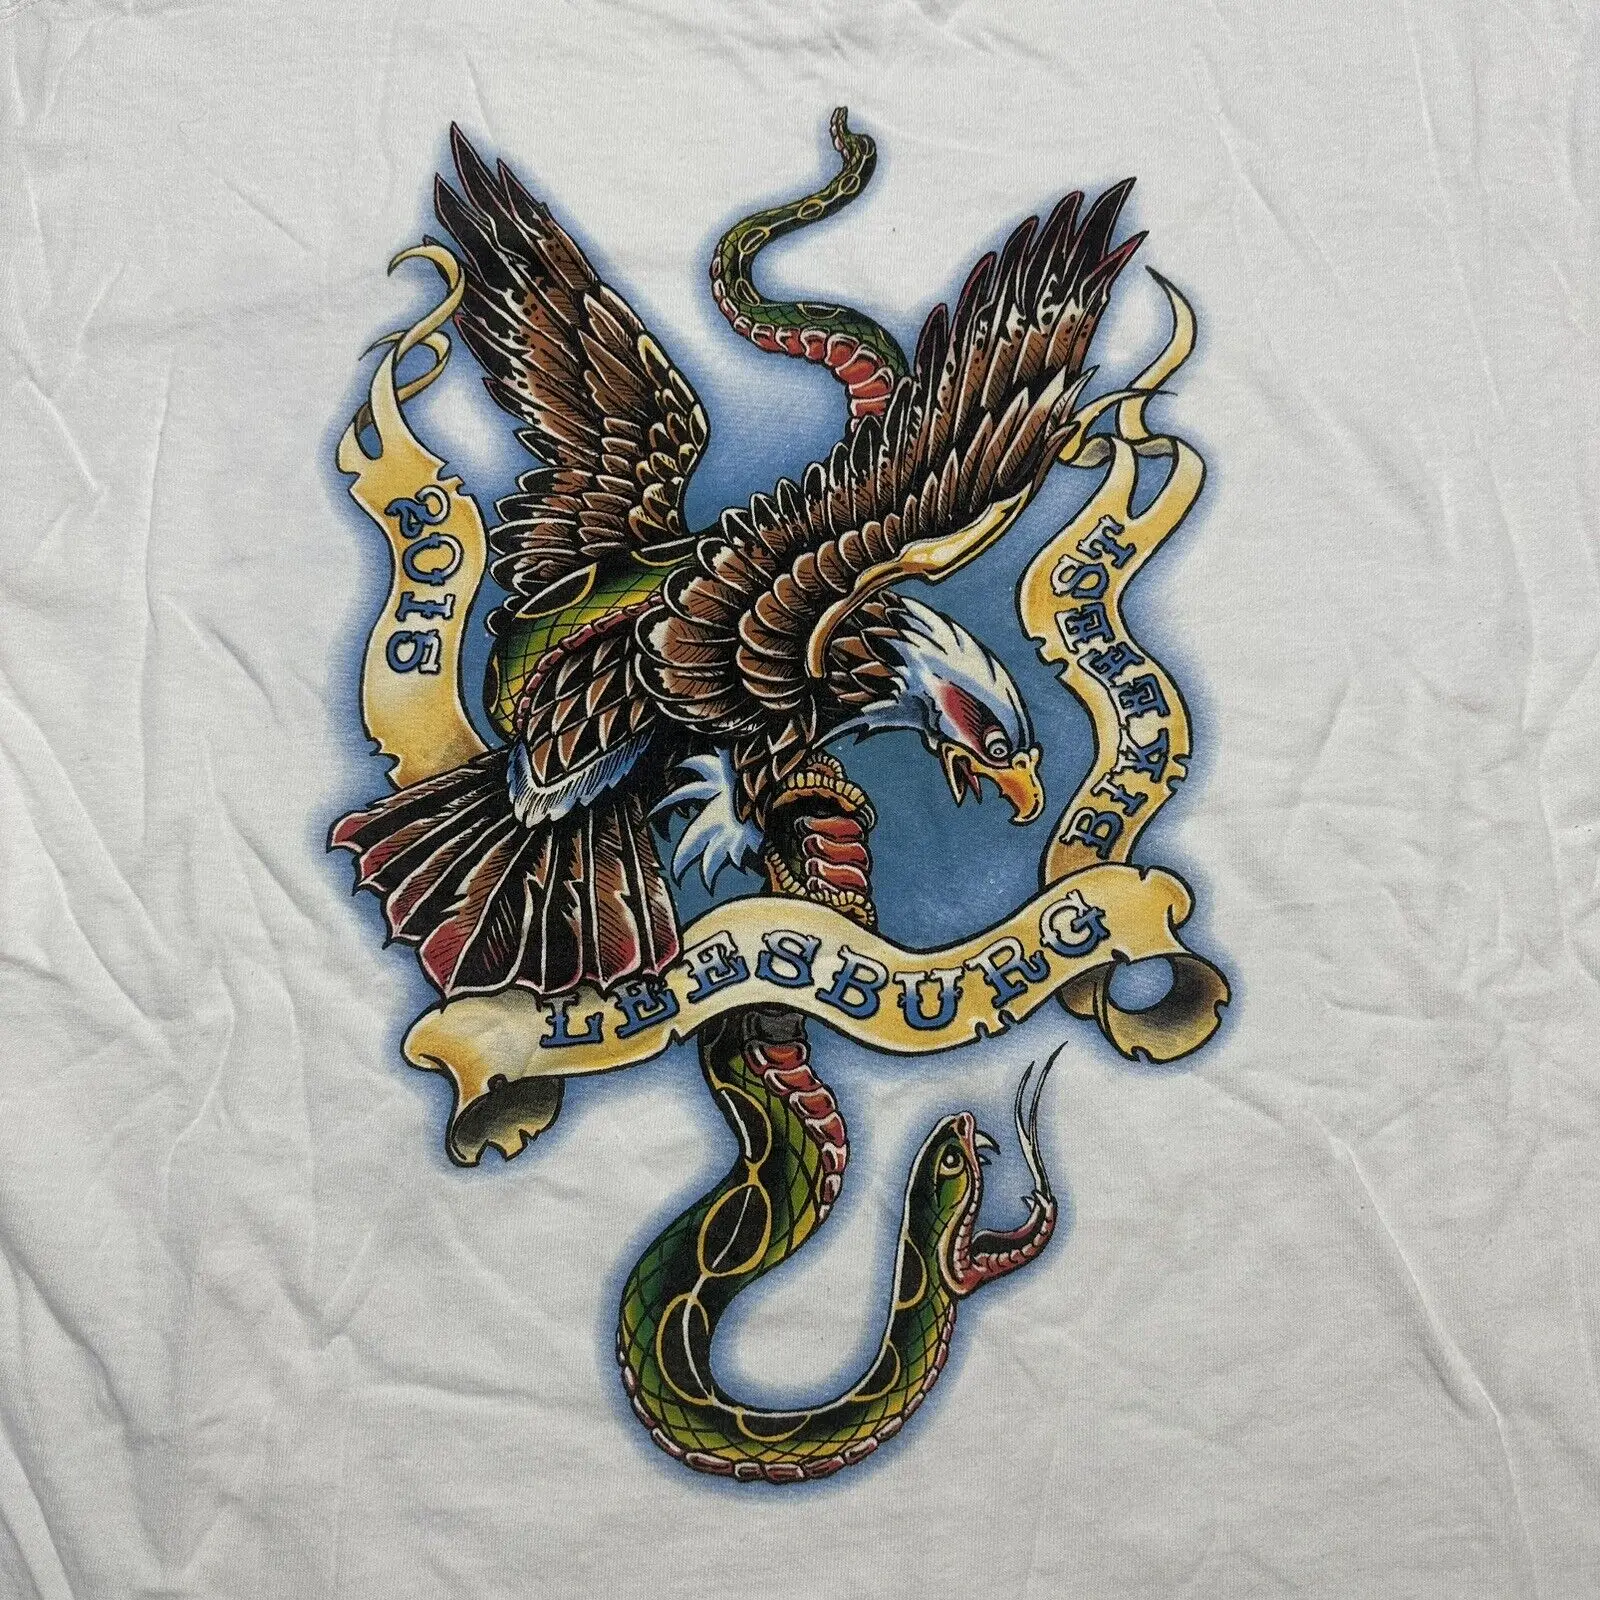 Leesburg Bikefest 2015 Футболка Мужская XL с татуировкой Орла и Змеи Белая футболка с длинными рукавами